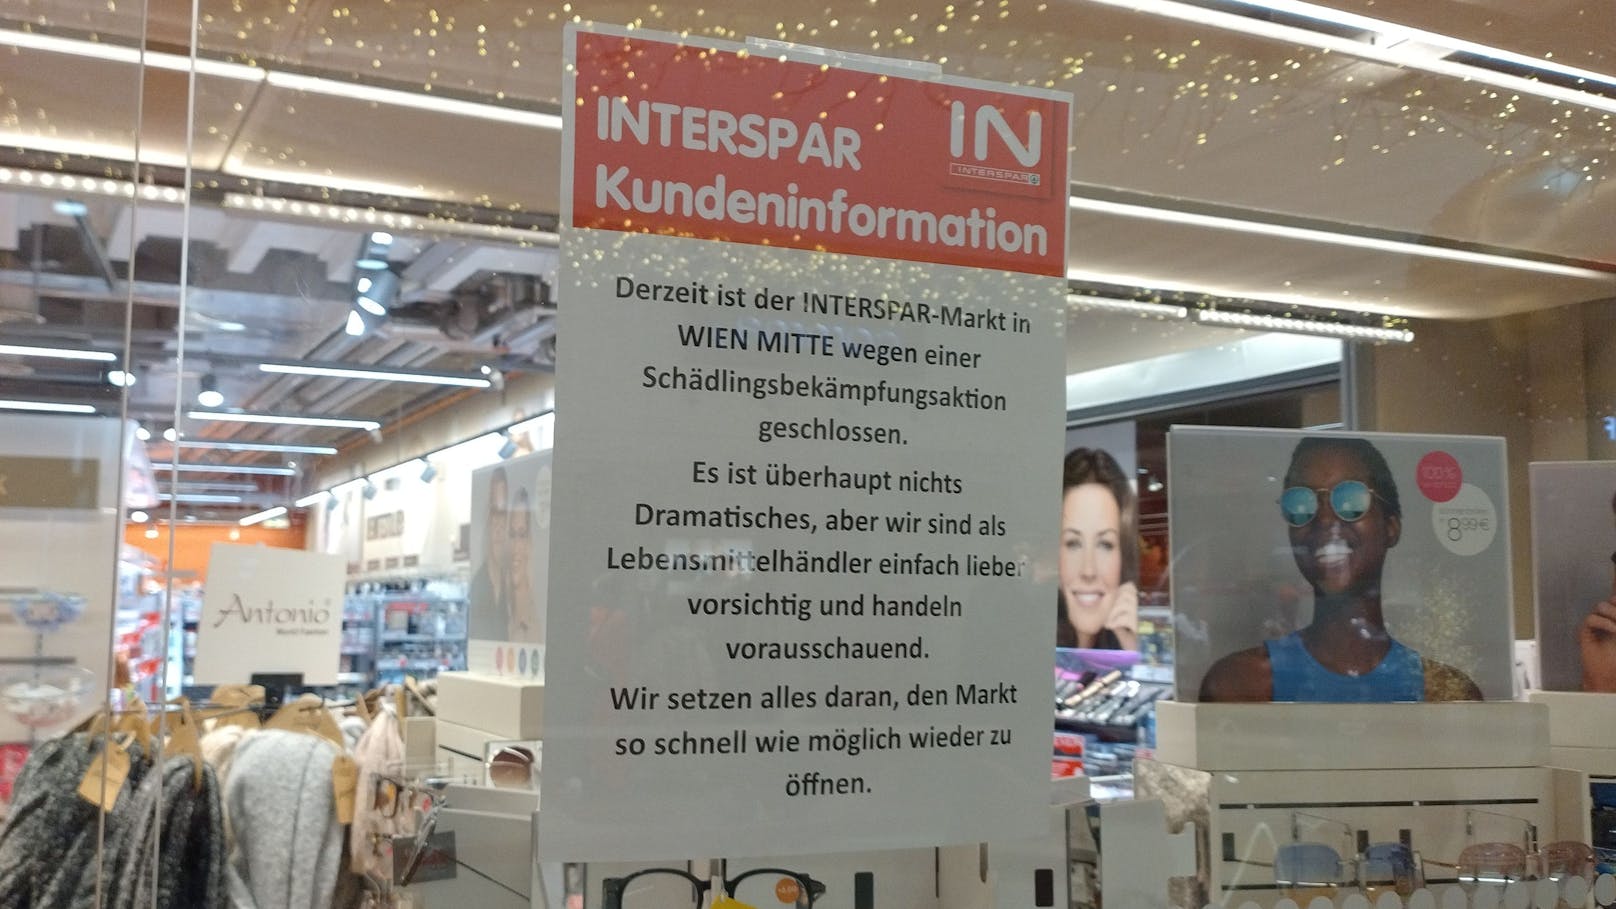 Wiener Supermarkt muss wegen Schädlingen zusperren